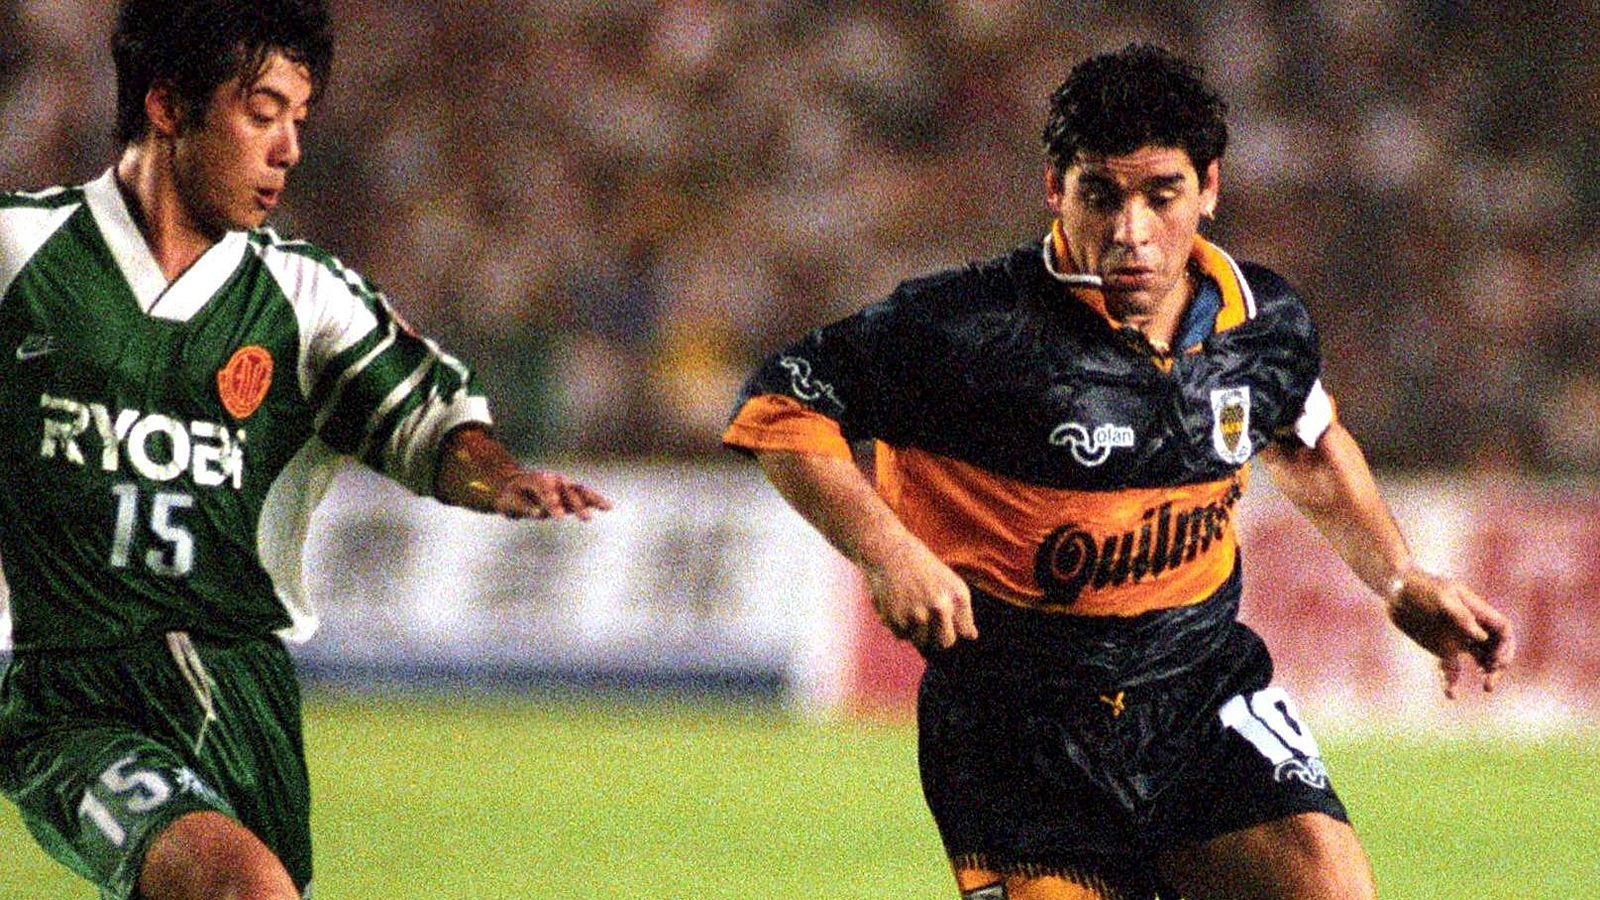 
                <strong>Diego Maradona (Boca Juniors)</strong><br>
                Zeit im Verein: Oktober 1995 bis Oktober 1997 (vorher auch in der Saison 1981/1982)Position: MittelfeldDer ehemalige Weltstar (r.) ist das Gesicht, das Fußballfans auf der ganzen Welt mit den Boca Juniors verbinden. Allerdings war er bei seinem zweiten Engagement bei weitem nicht mehr auf der Höhe seines Schaffens, hatte zuvor seine Dopingsperre wegen der positiven Probe während der WM 1994 absitzen müssen. Aber allein Maradona noch einmal im Trikot des Klubs spielen zu sehen, war ein Ereignis, von dem die Fans ein Leben lang zehren dürften.
              